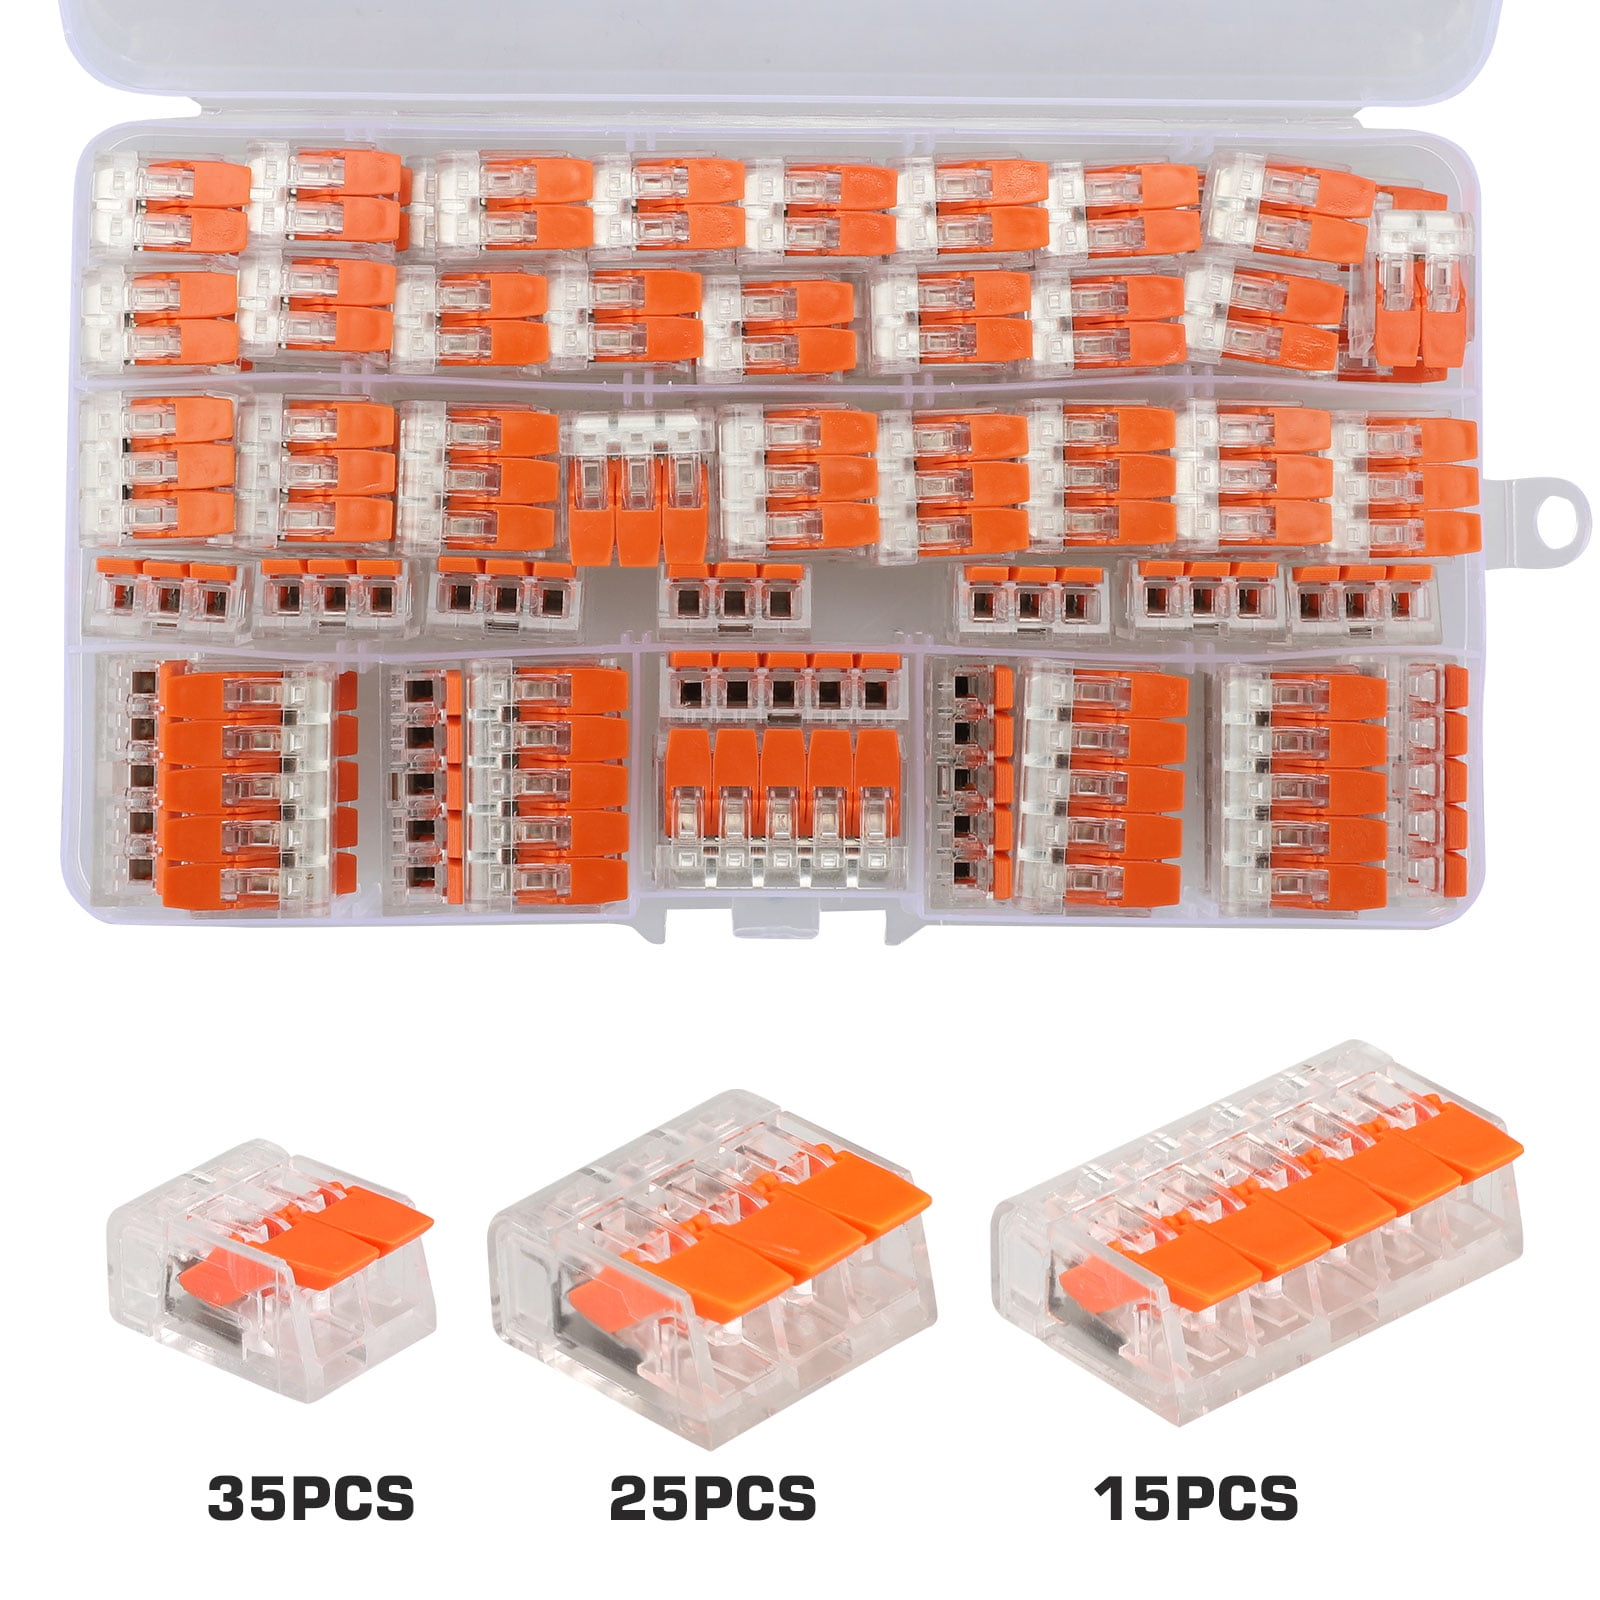 Assortiment de 75 connecteurs à levier et écrous à levier, kit de  connecteur de fil, connecteurs d'épissure compacts, connecteurs électriques  universels multifonctions souples et durs (2 ports, 3 ports, 5 ports) 